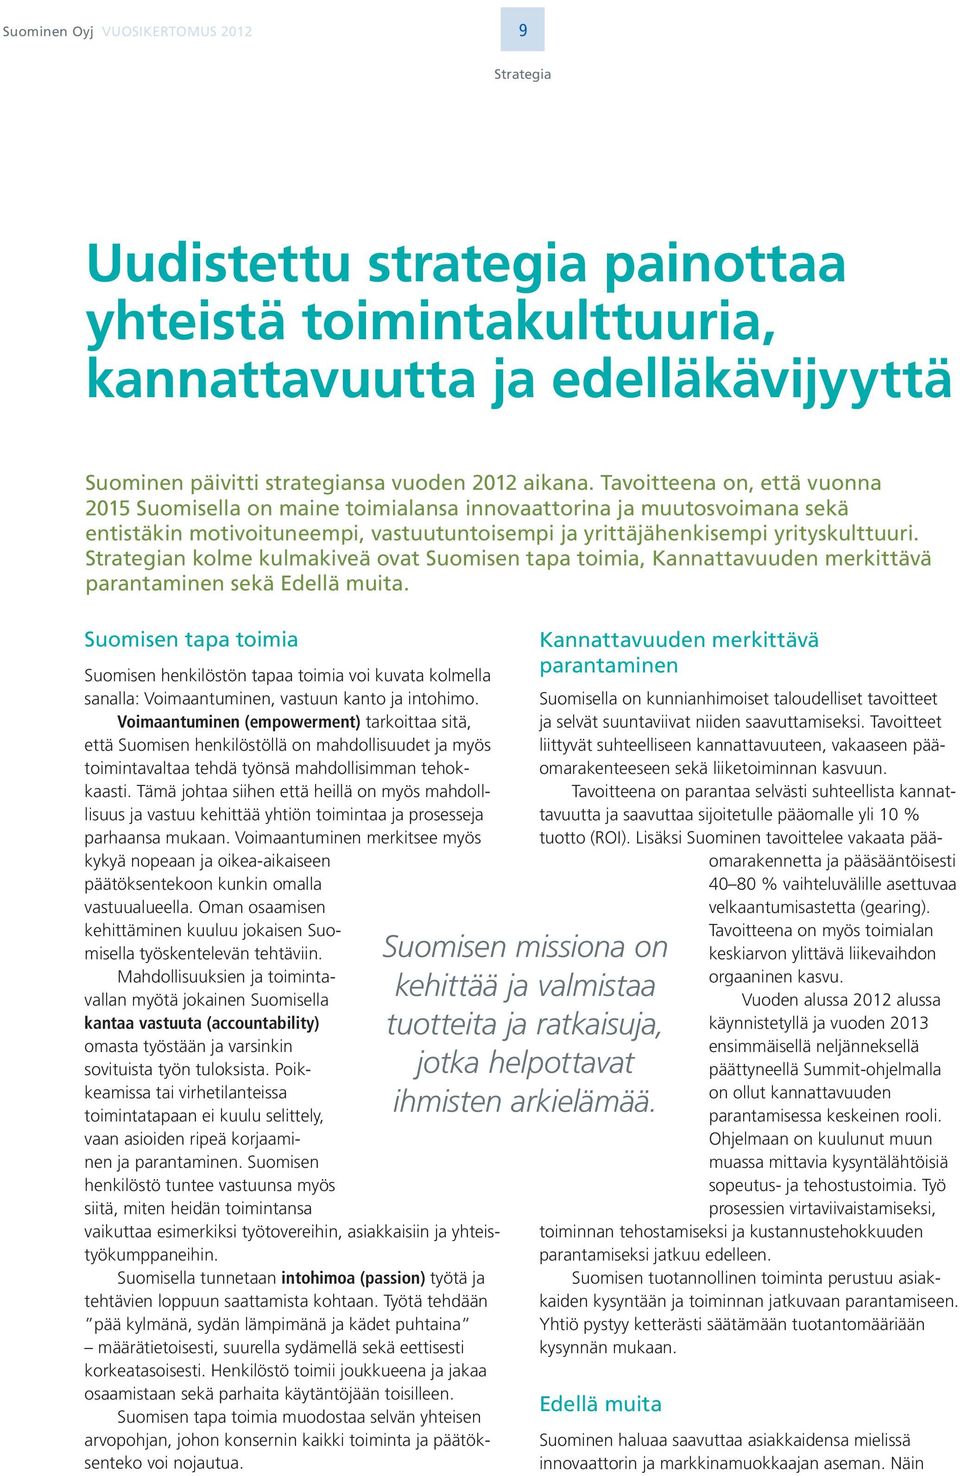 Strategian kolme kulmakiveä ovat Suomisen tapa toimia, Kannattavuuden merkittävä parantaminen sekä Edellä muita.